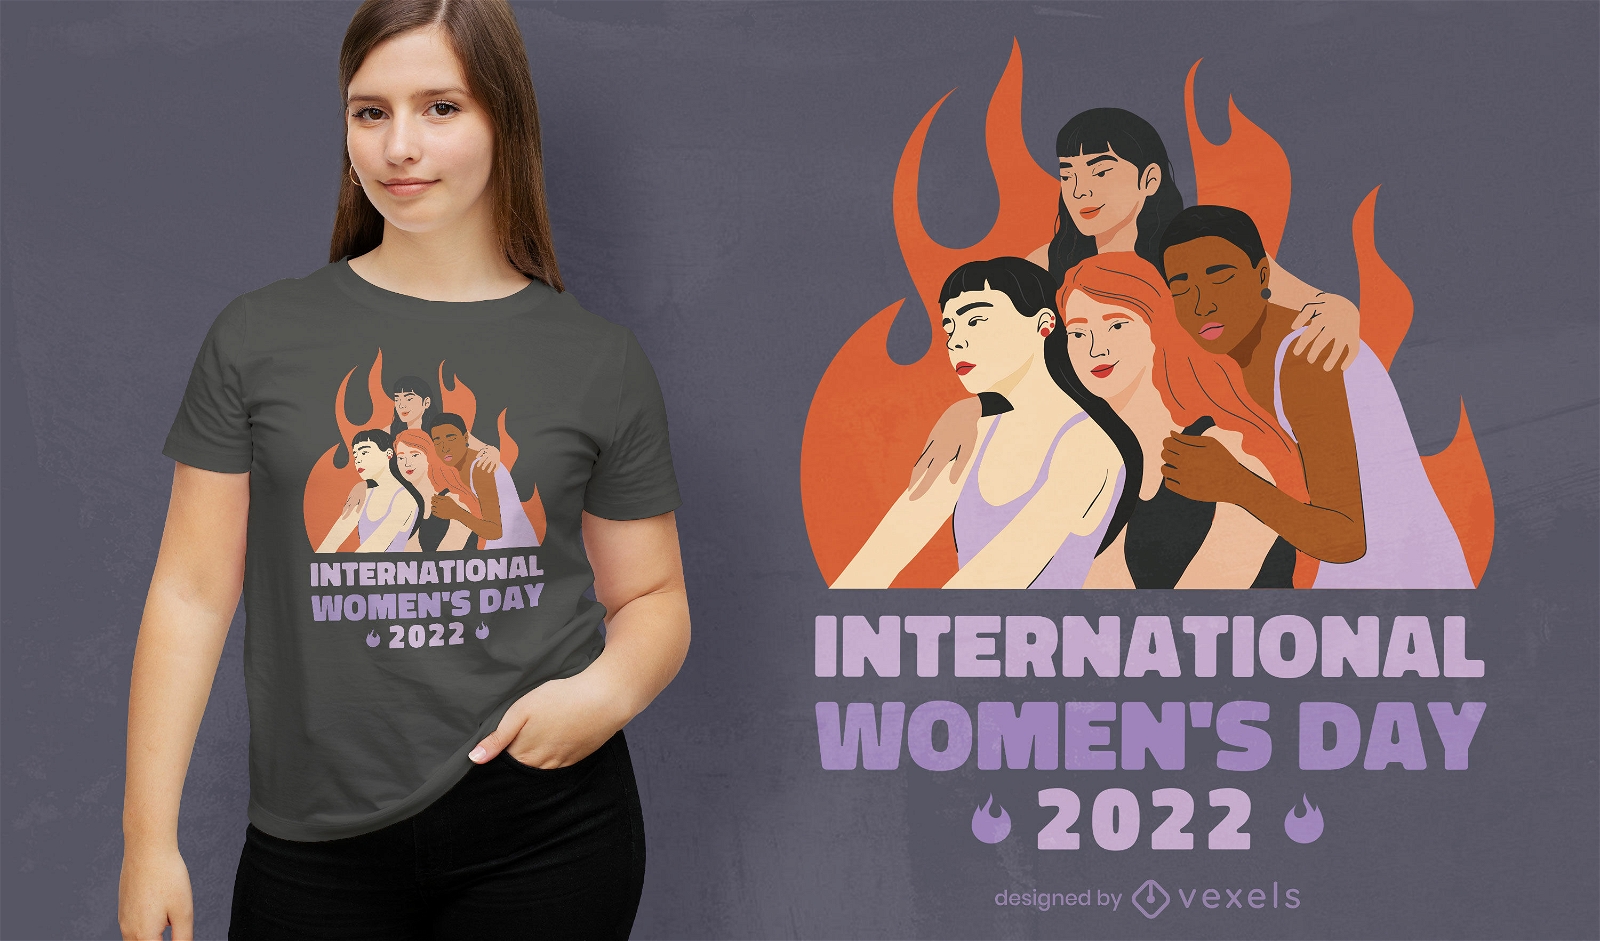 International Women's Day 2022 t-shirt design